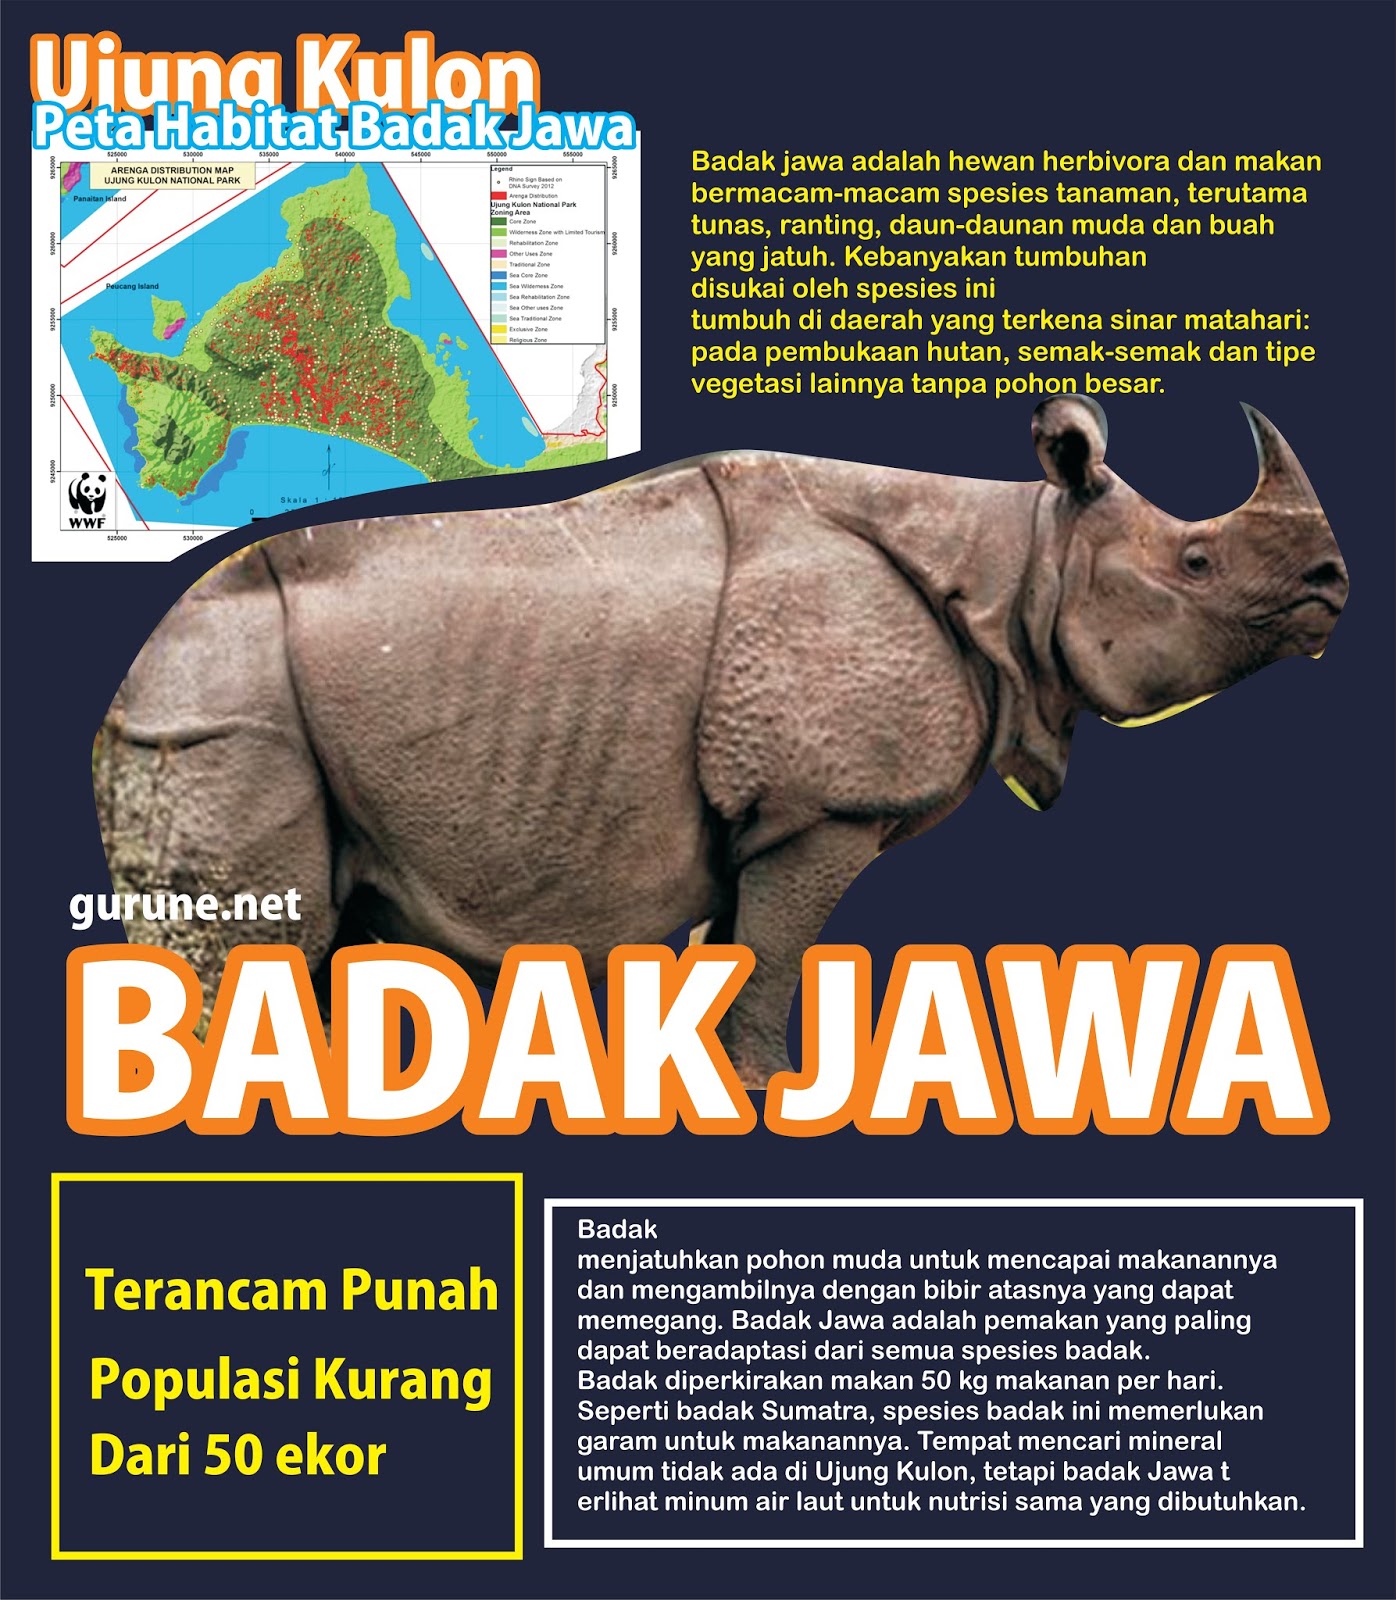 Contoh poster yang menjelaskan segala informasi yang berhubungan dengan badak jawa